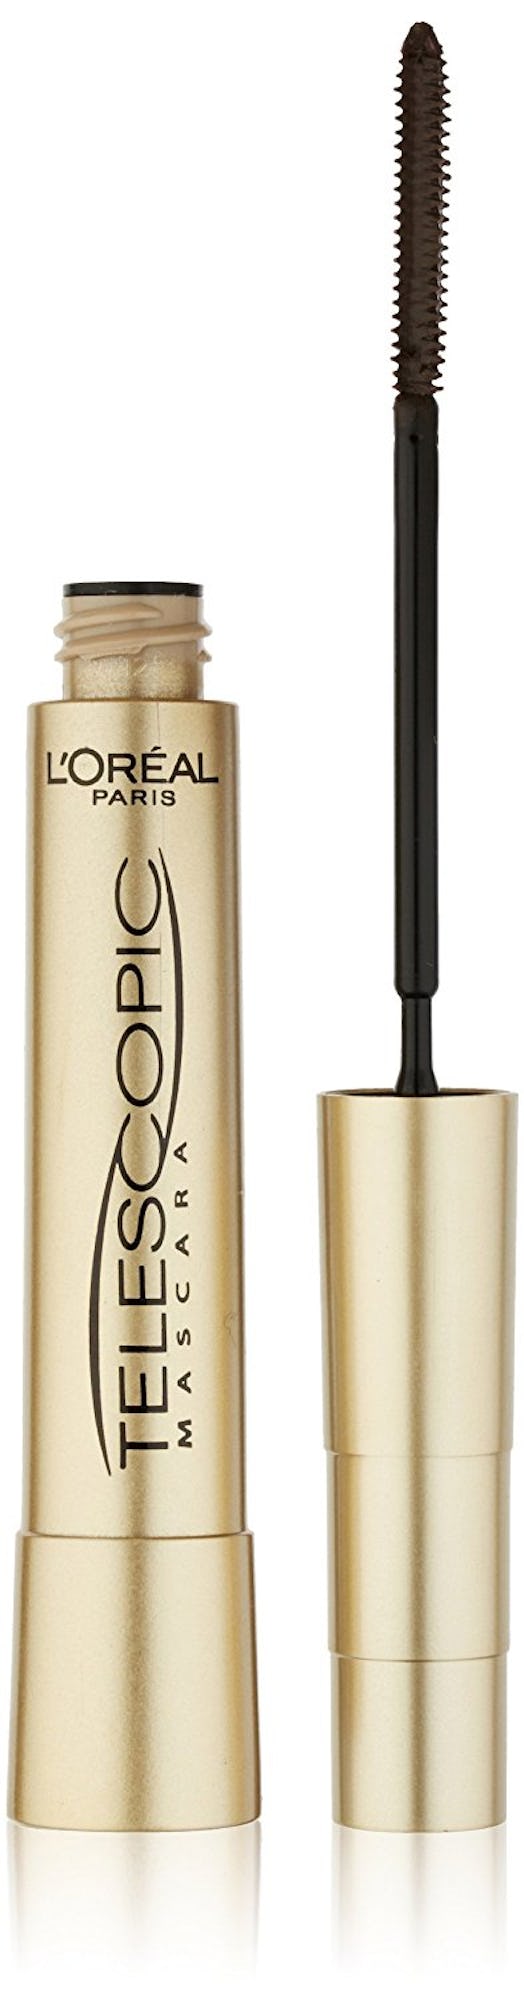 L'Oreal telescopic mascara tube and brush